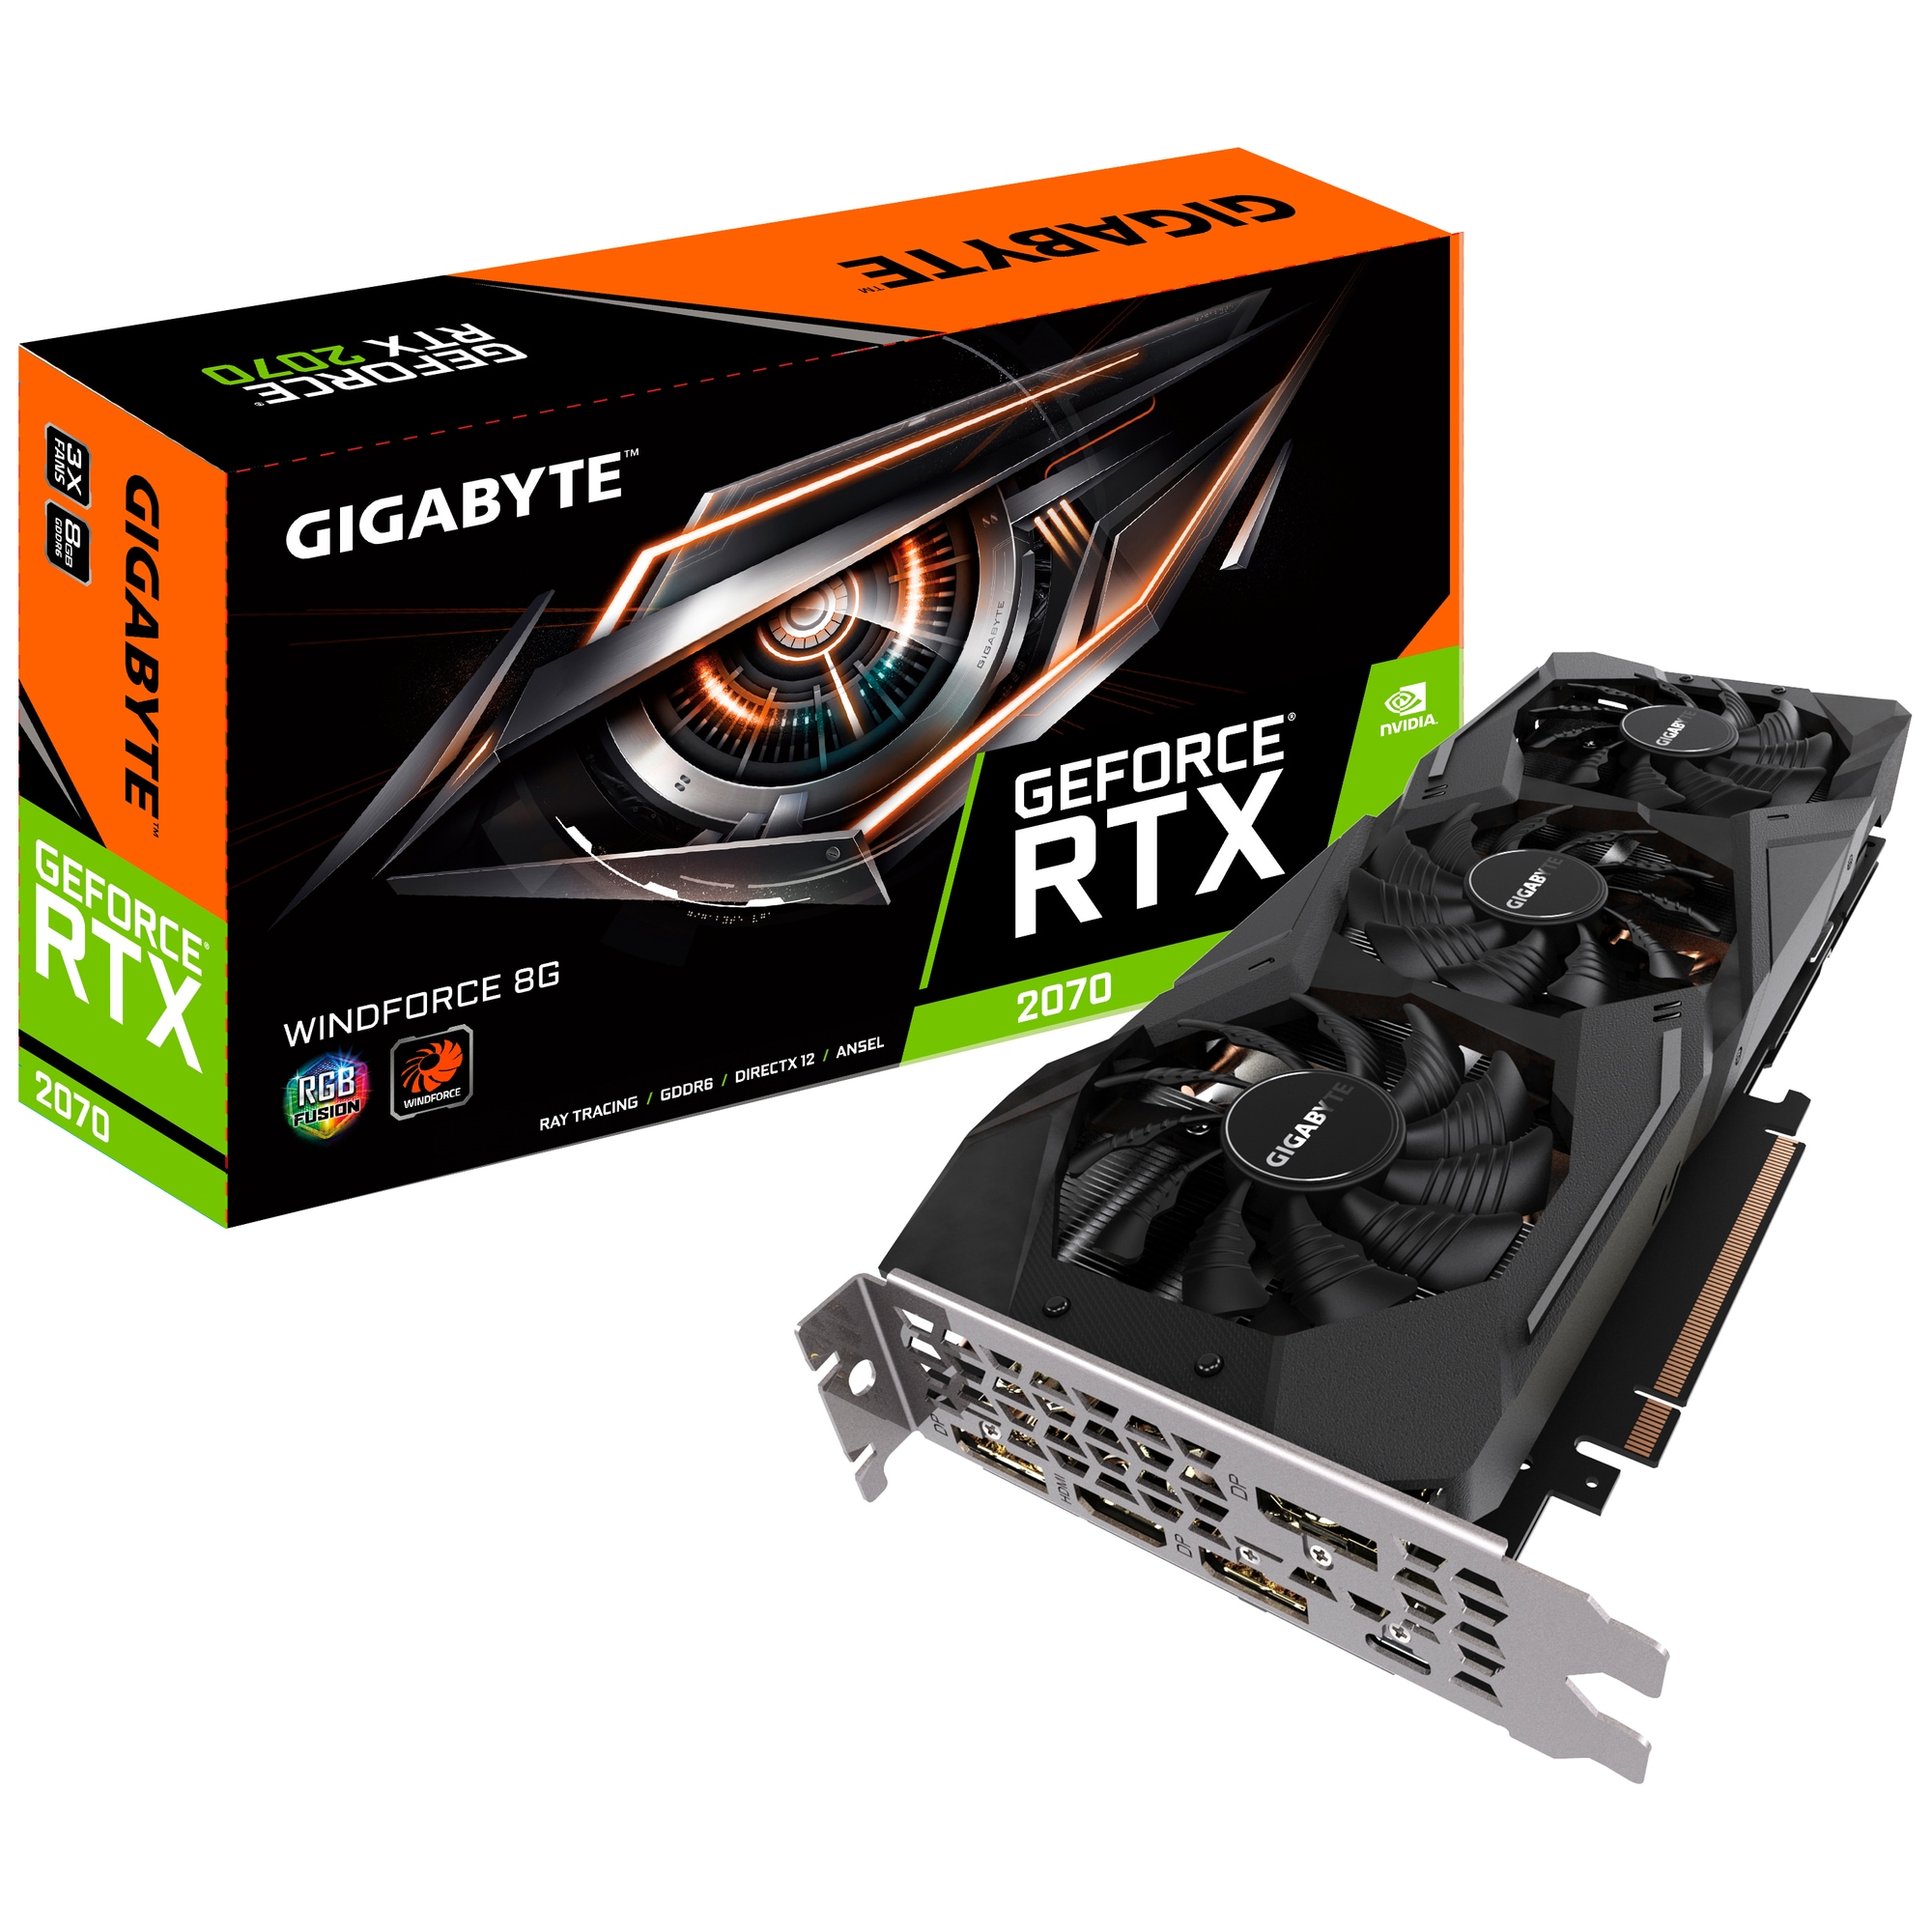 Gigabyte GeForce RTX 2070 WindForce grafikkort 8G - Elkjøp